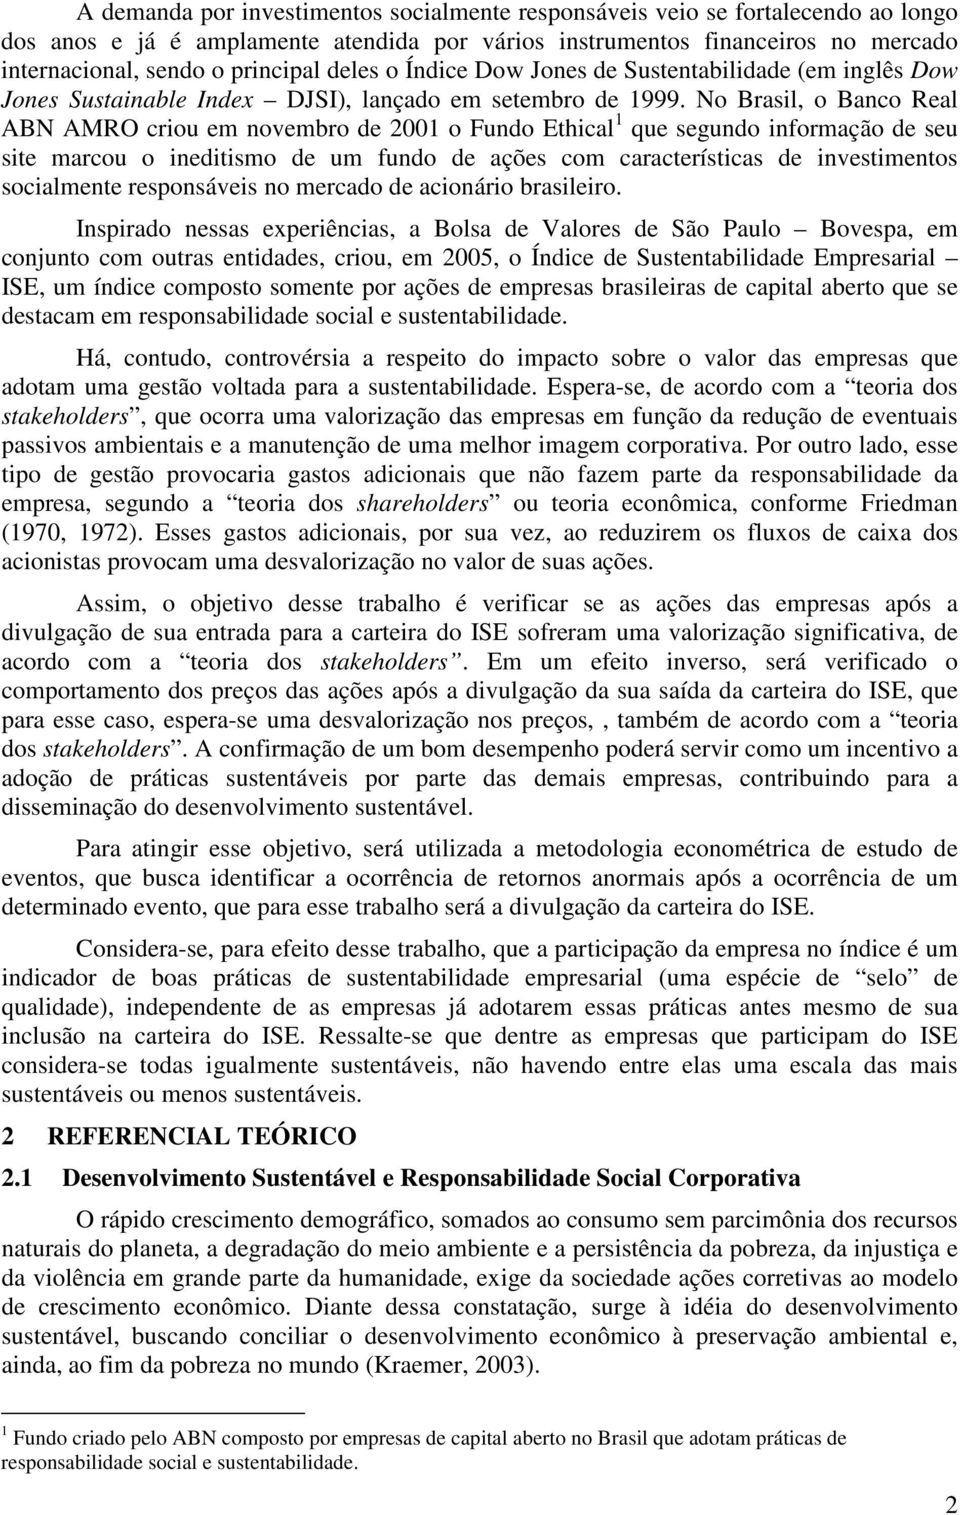 No Brasil, o Banco Real ABN AMRO criou em novembro de 2001 o Fundo Ethical 1 que segundo informação de seu site marcou o ineditismo de um fundo de ações com características de investimentos